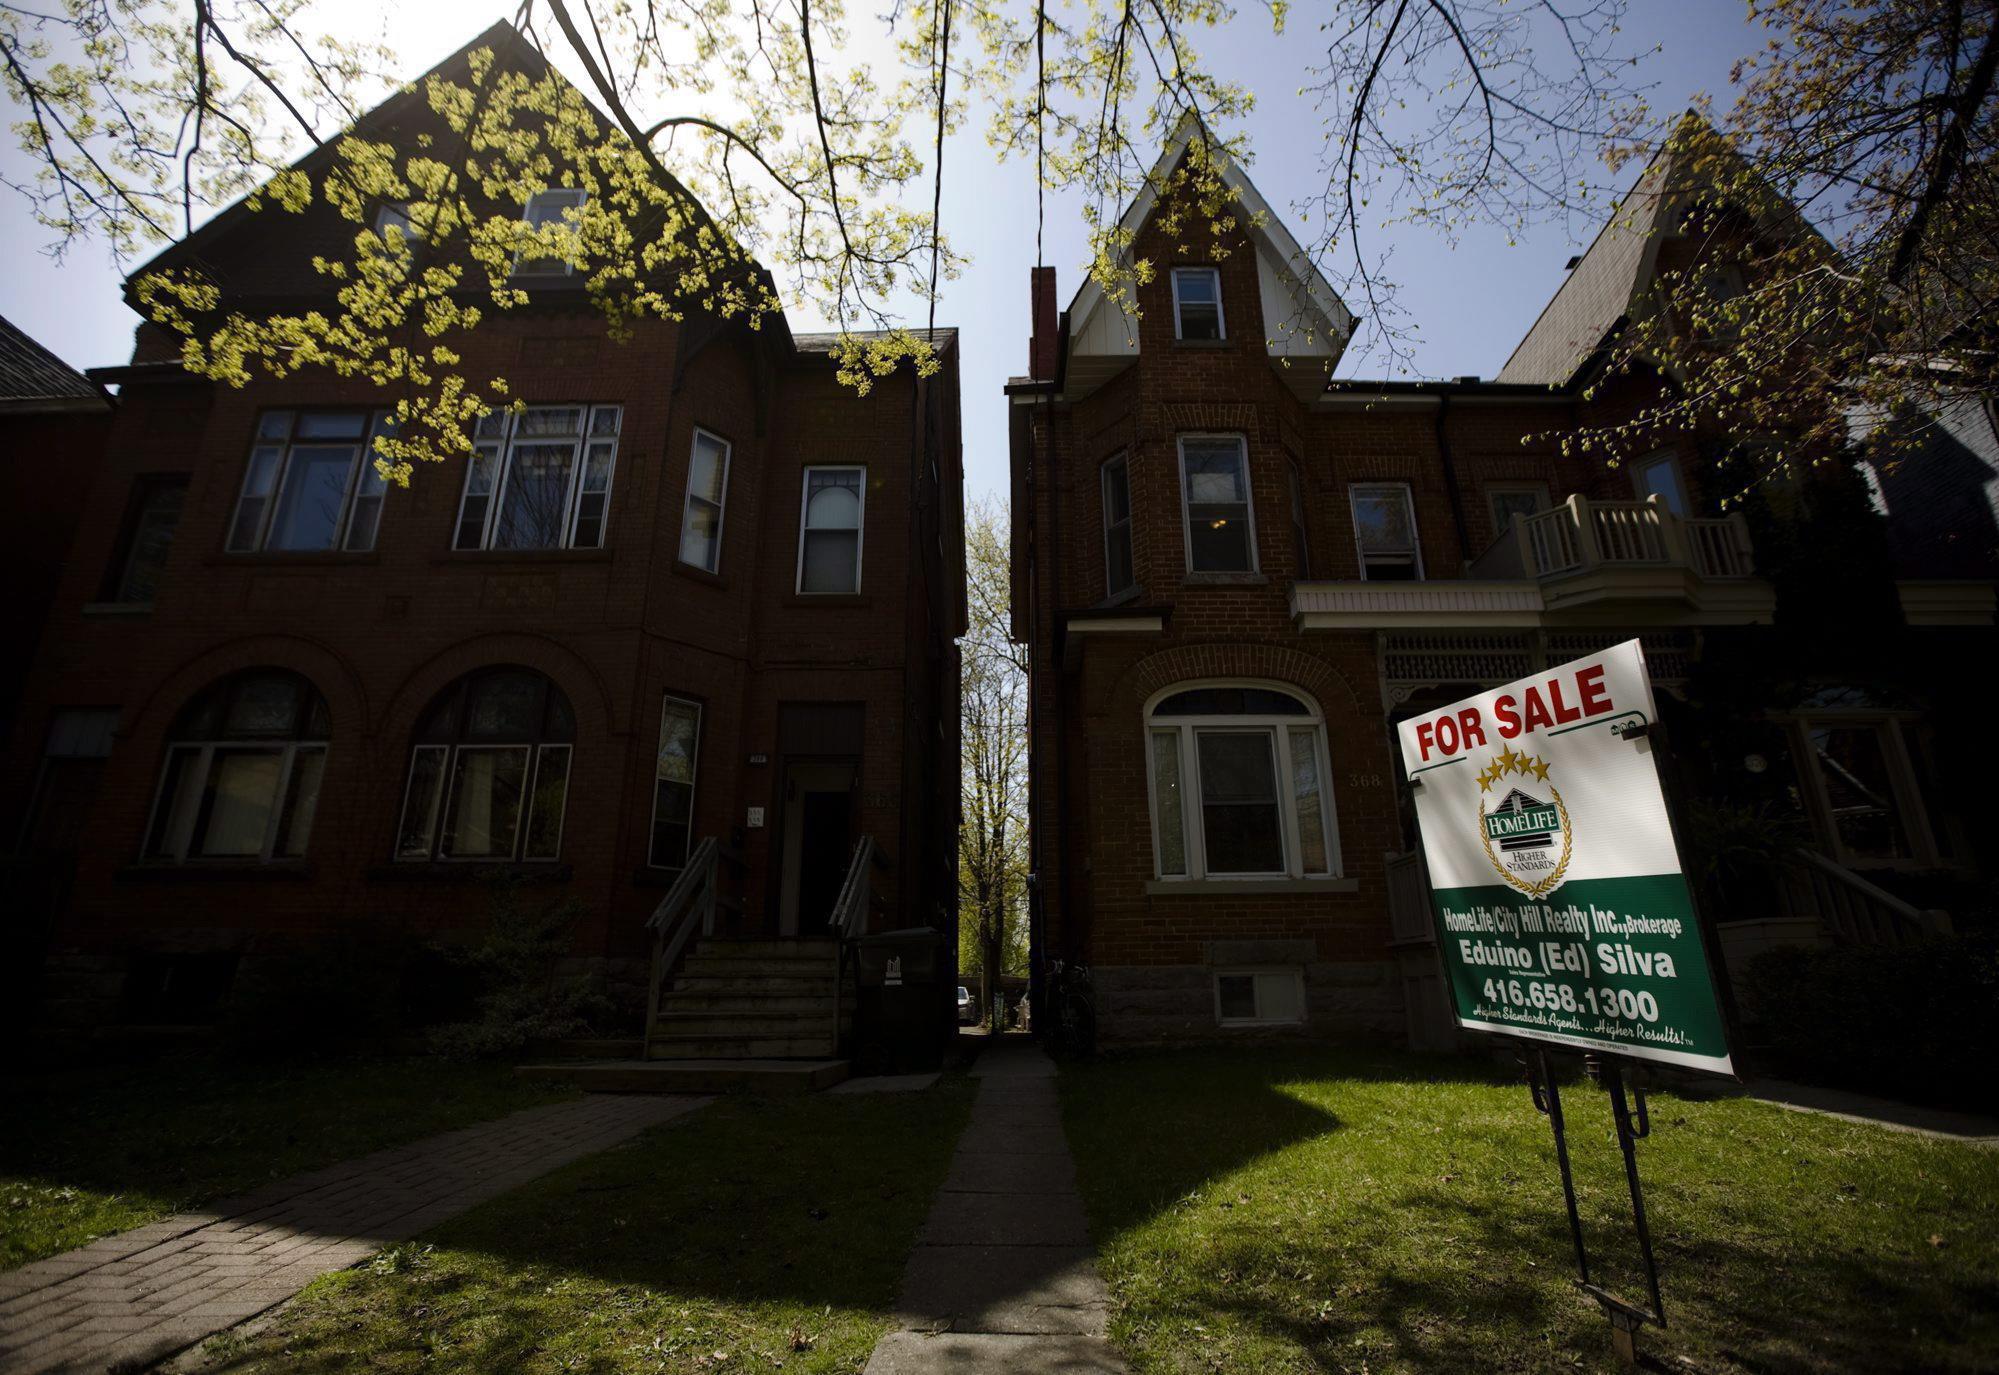 Le coût de vente moyen des maisons a diminué à Toronto RadioCanada.ca